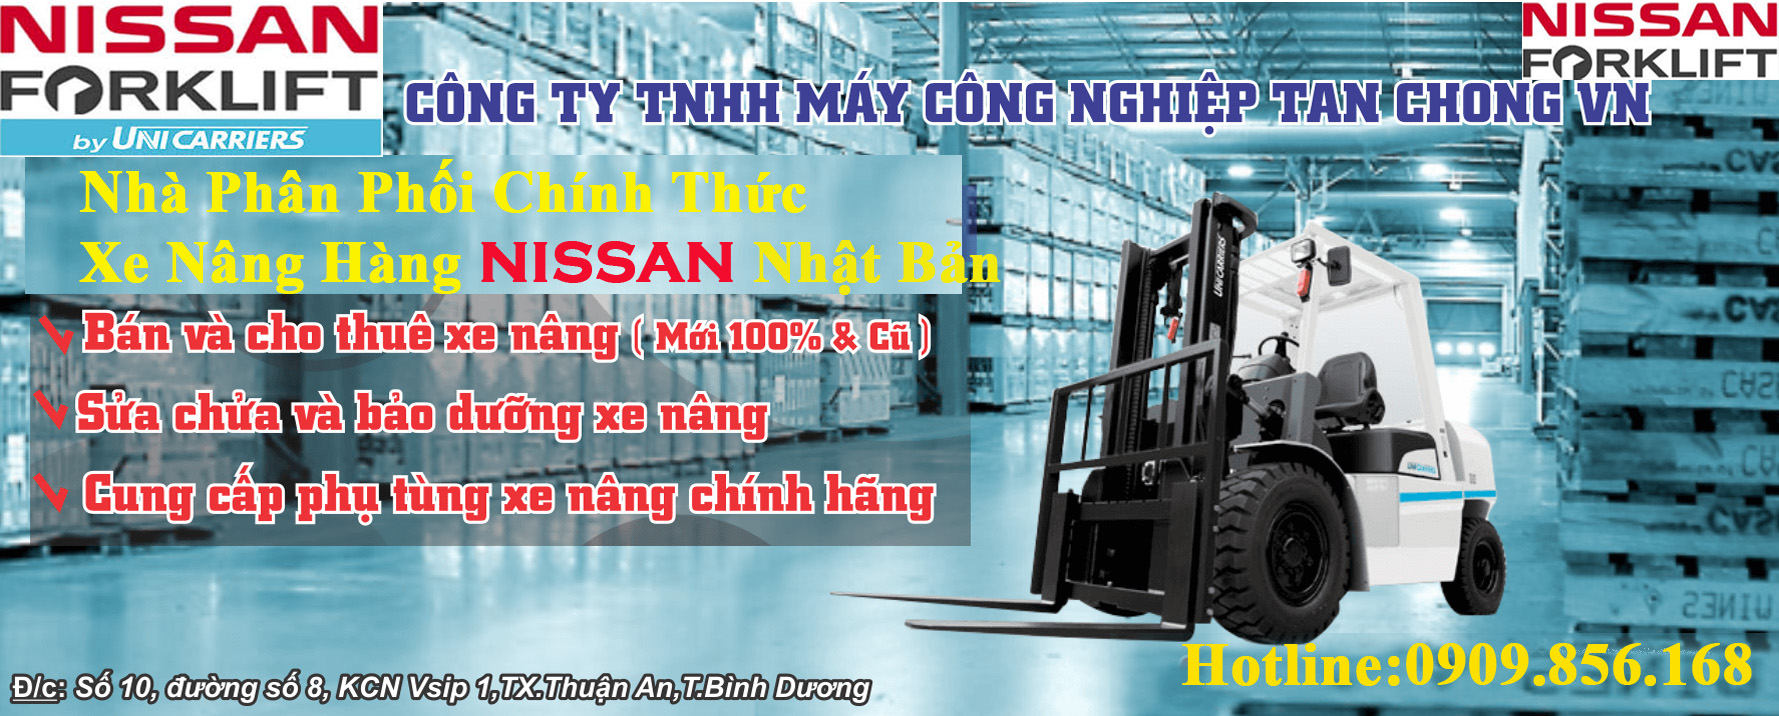 Tan Chong- TCIM - Nhà phân phối xe nâng Nissan Unicarriers duy nhất tại Việt Nam chất lượng hàng đầu tại Việt Nam